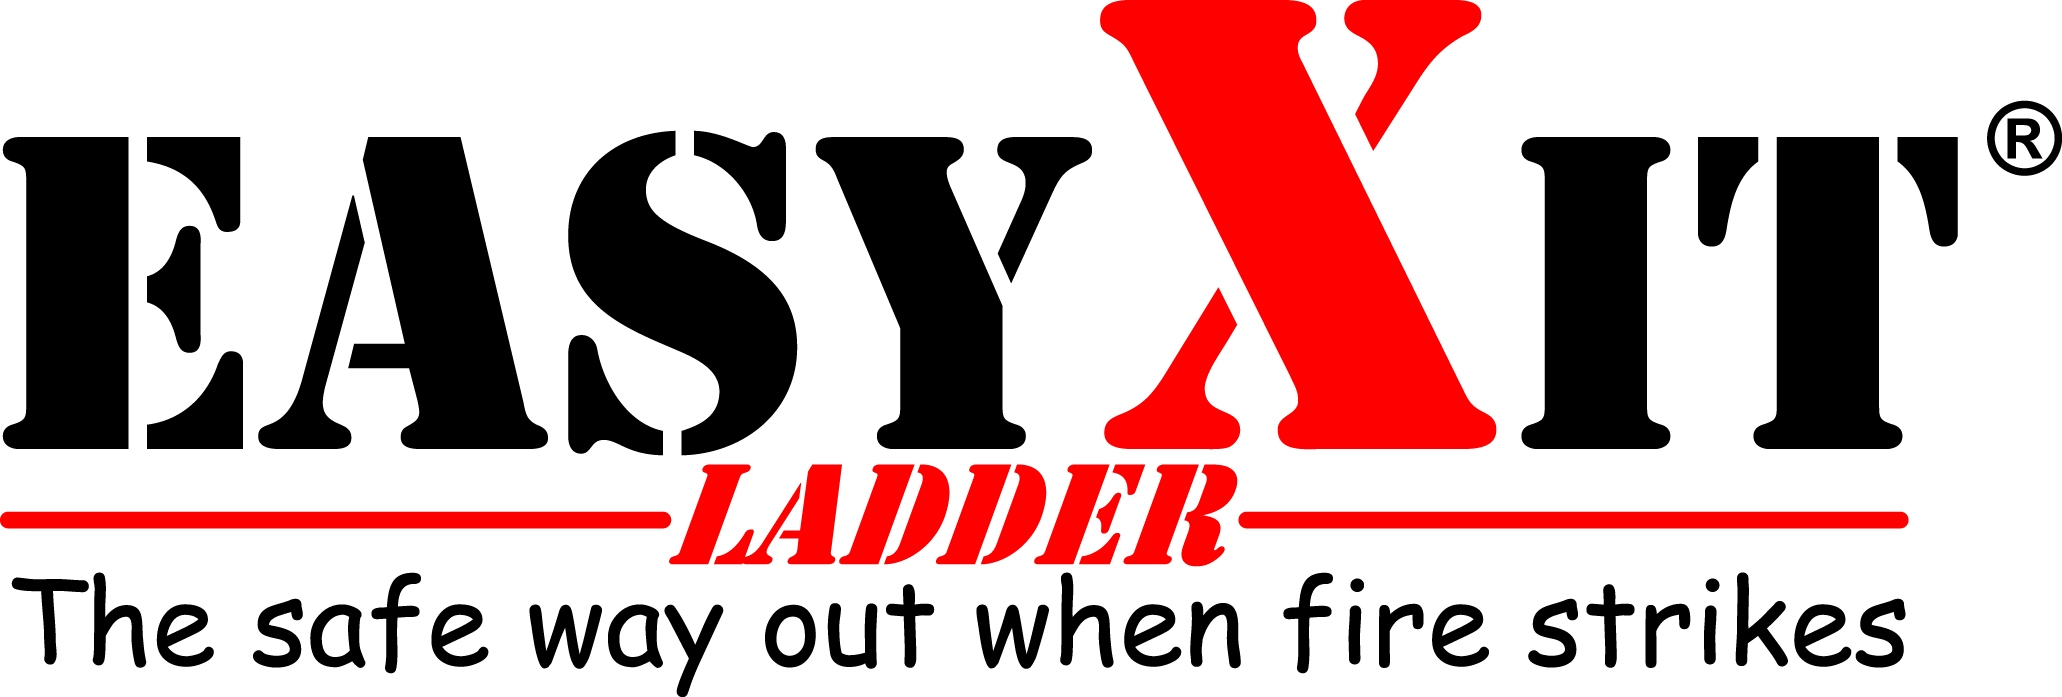 EasyXit Ladder